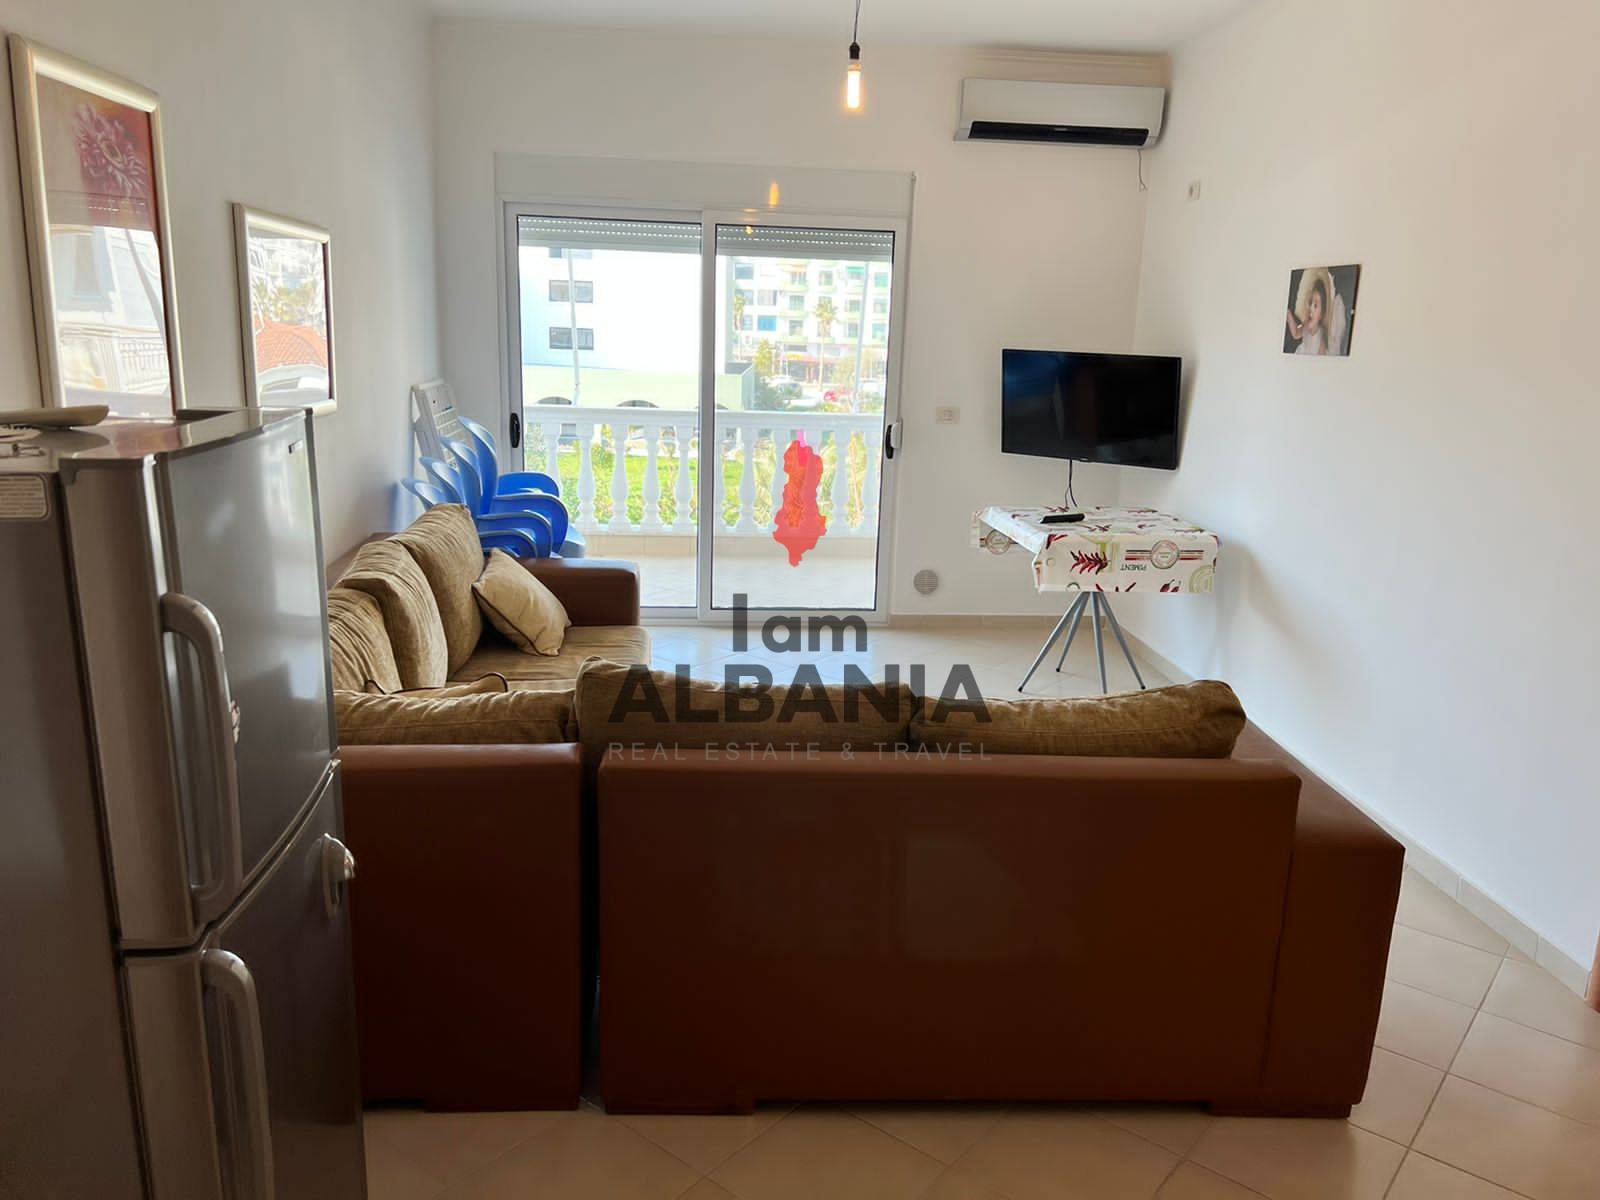 Albánsko, 2 izbový byt vohdný na prenájom